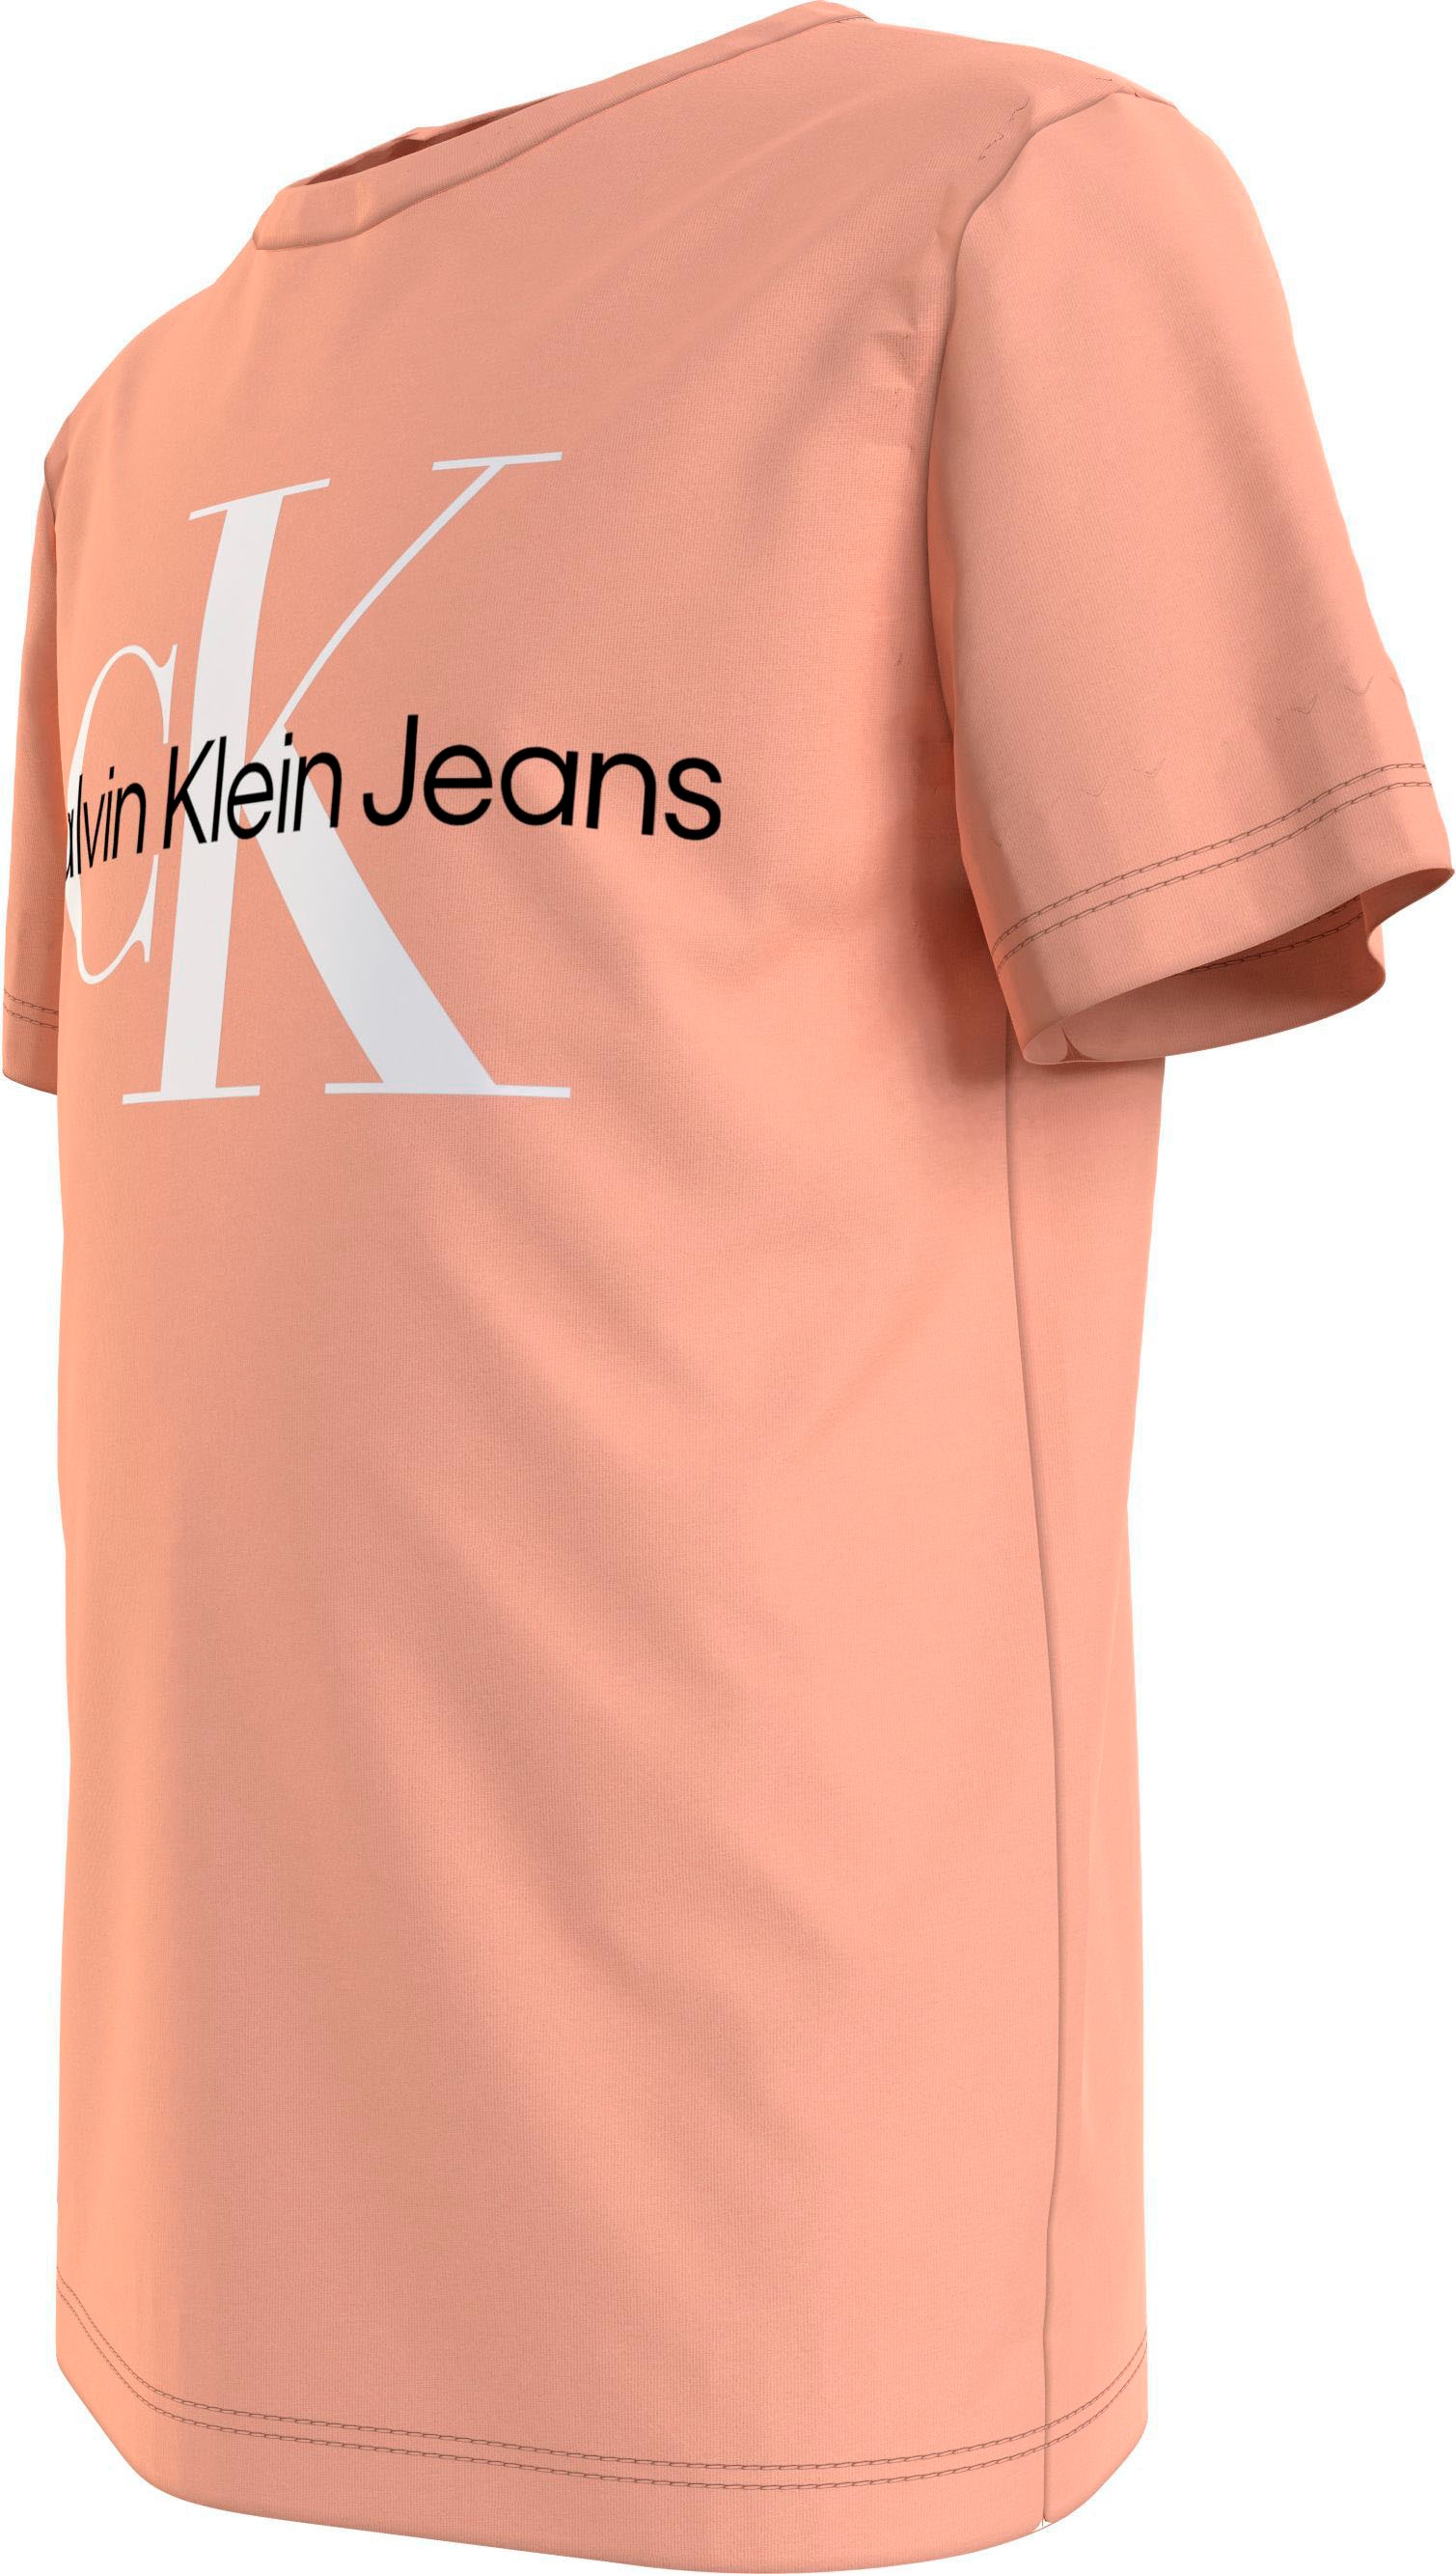 Calvin Klein Jeans T-Shirt »MONOGRAM LOGO T-SHIRT«, Kinder Kids Junior  MiniMe,für Mädchen und Jungen online kaufen